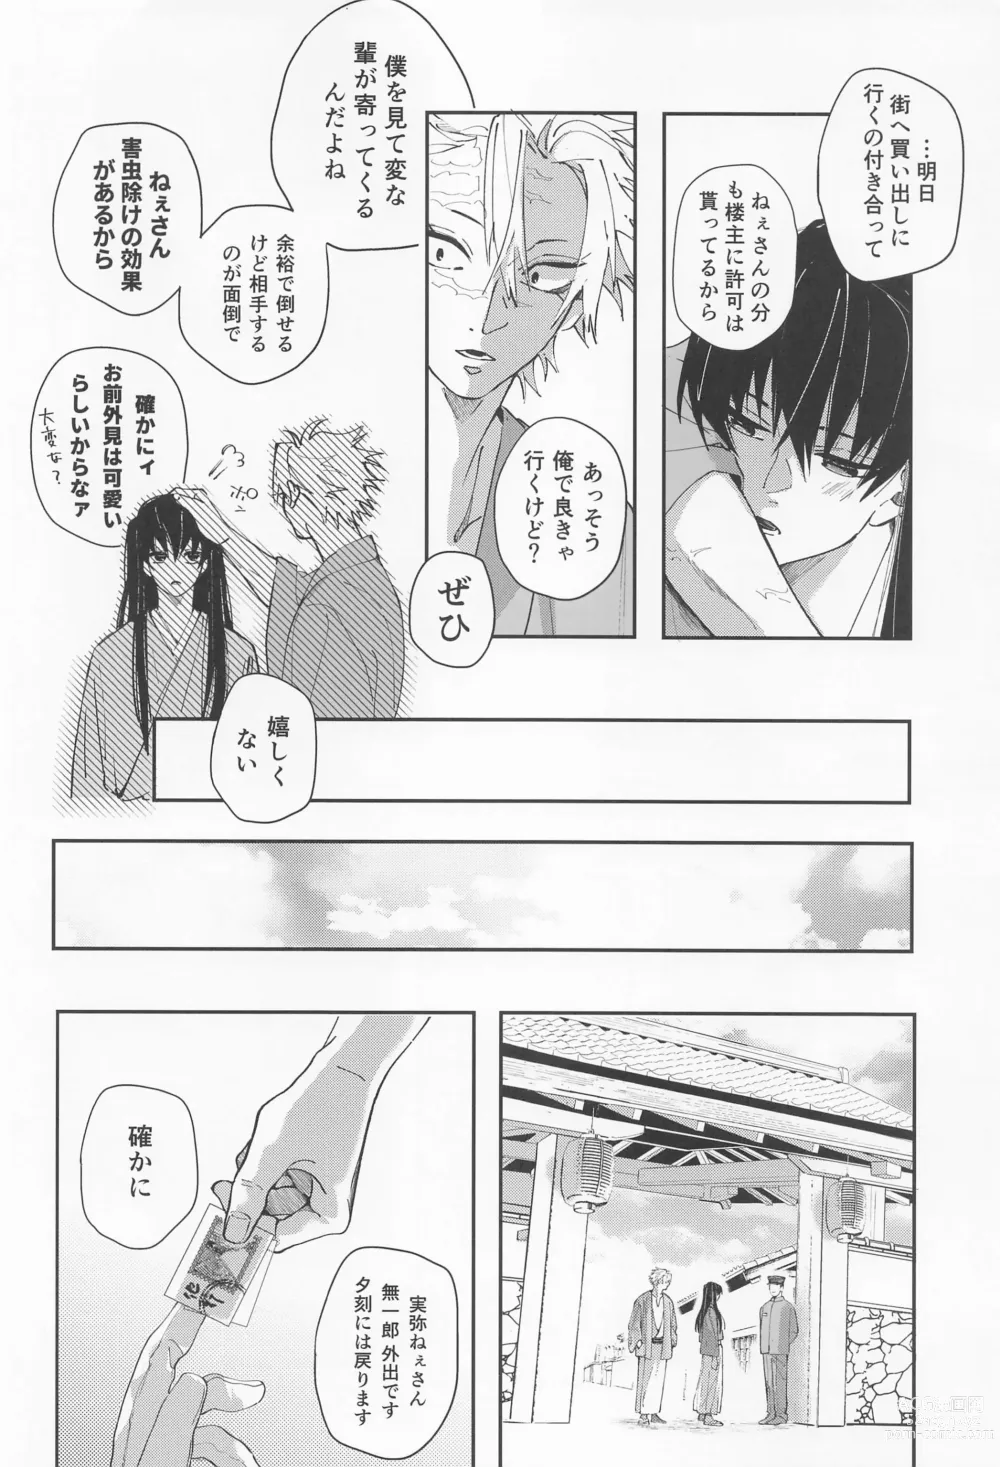 Page 49 of doujinshi Utakata  First volume